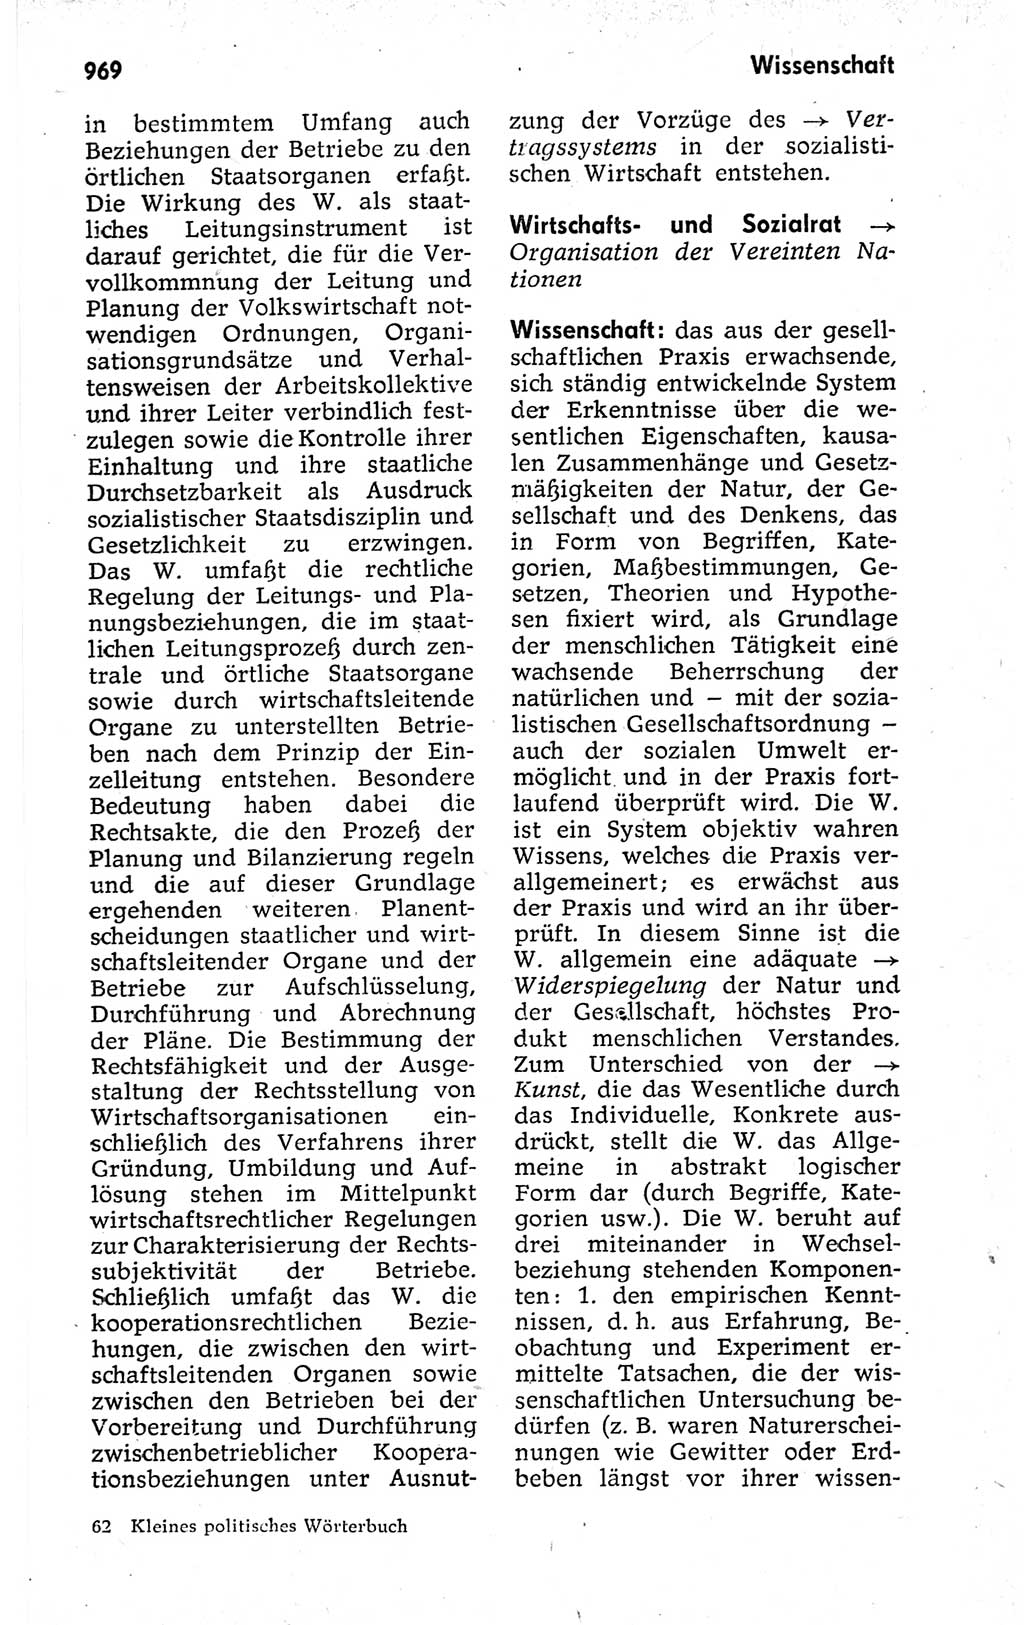 Kleines politisches Wörterbuch [Deutsche Demokratische Republik (DDR)] 1973, Seite 969 (Kl. pol. Wb. DDR 1973, S. 969)